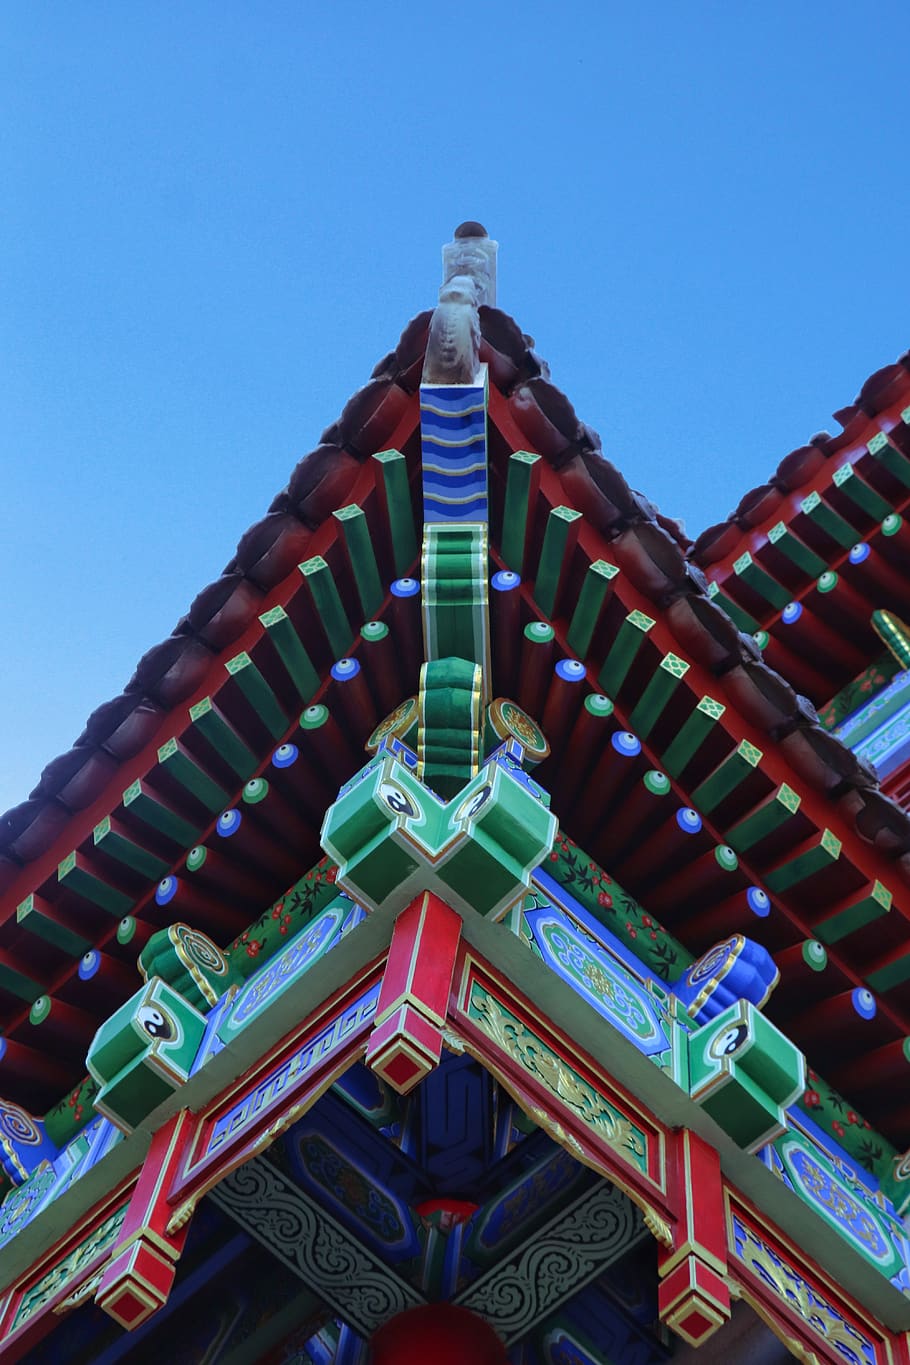 Cina, provinsi Shaanxi, pinus armandii, agama, pariwisata, sejarah, tradisional, bangunan, rumah, bagian atap